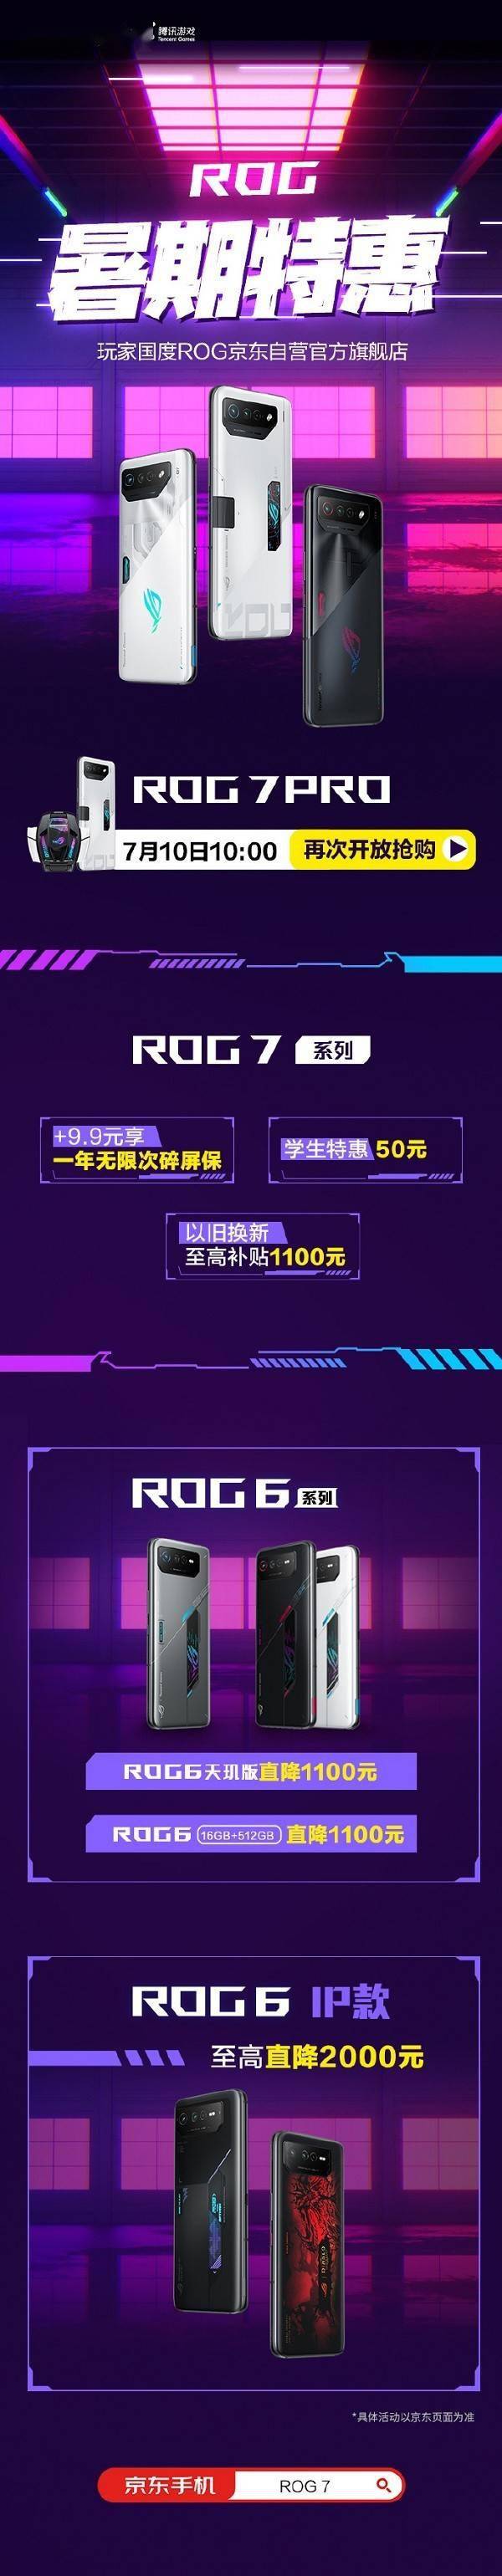 小米千元手机:ROG游戏手机暑期特惠来袭 至高直降2千元 这次香爆了！